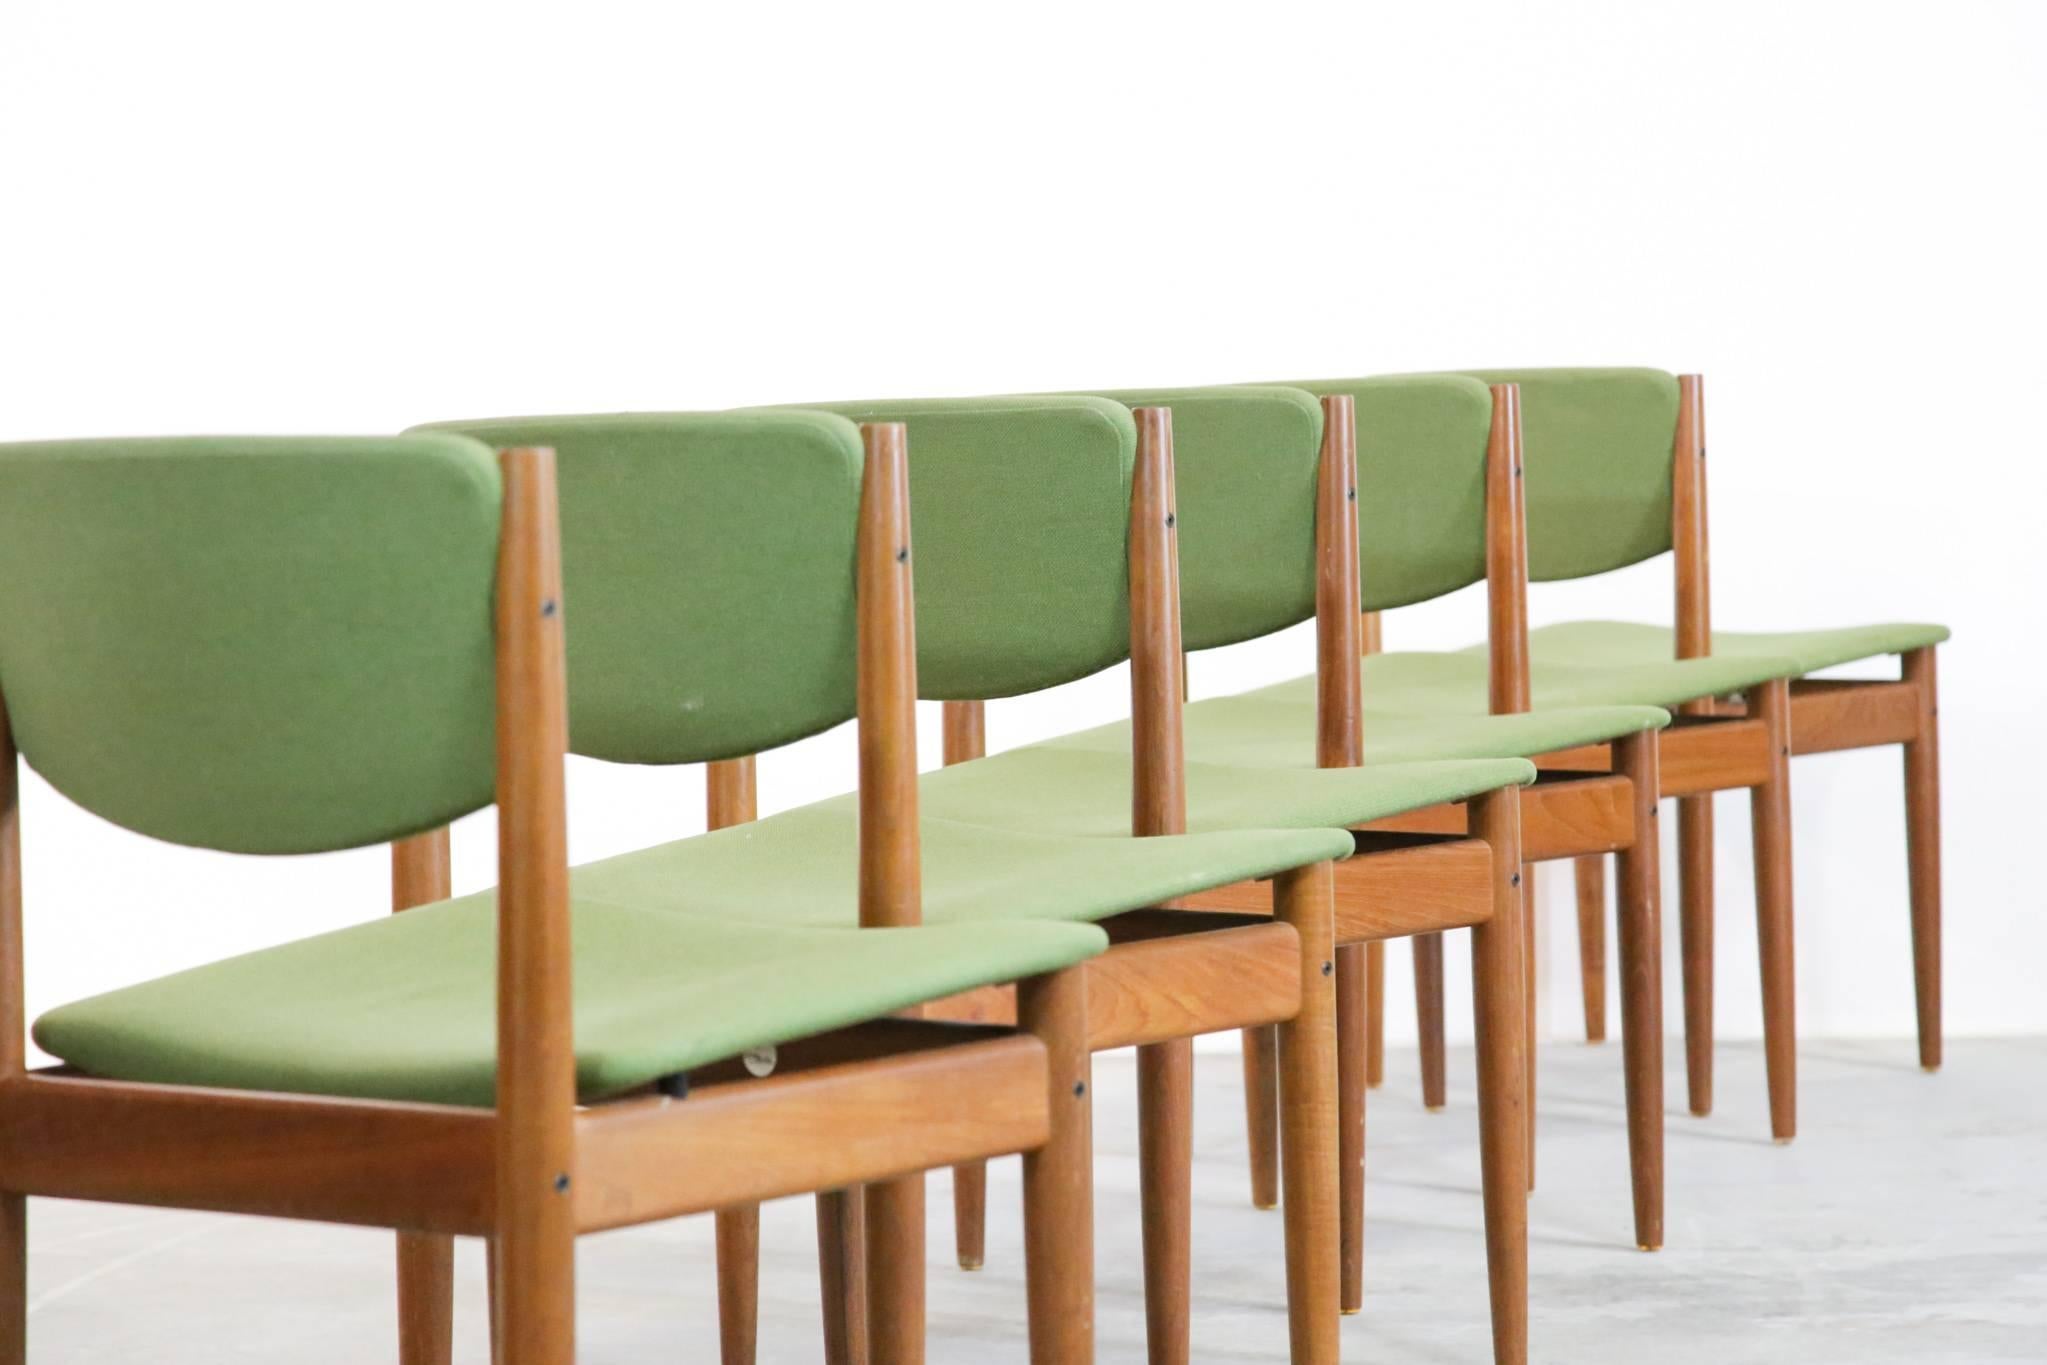 Satz von sechs Esszimmerstühlen, entworfen von Finn Juhl
Die Stühle sind mit dem Metallmedaillon von France & Son sowie mit einer Goldprägung versehen.